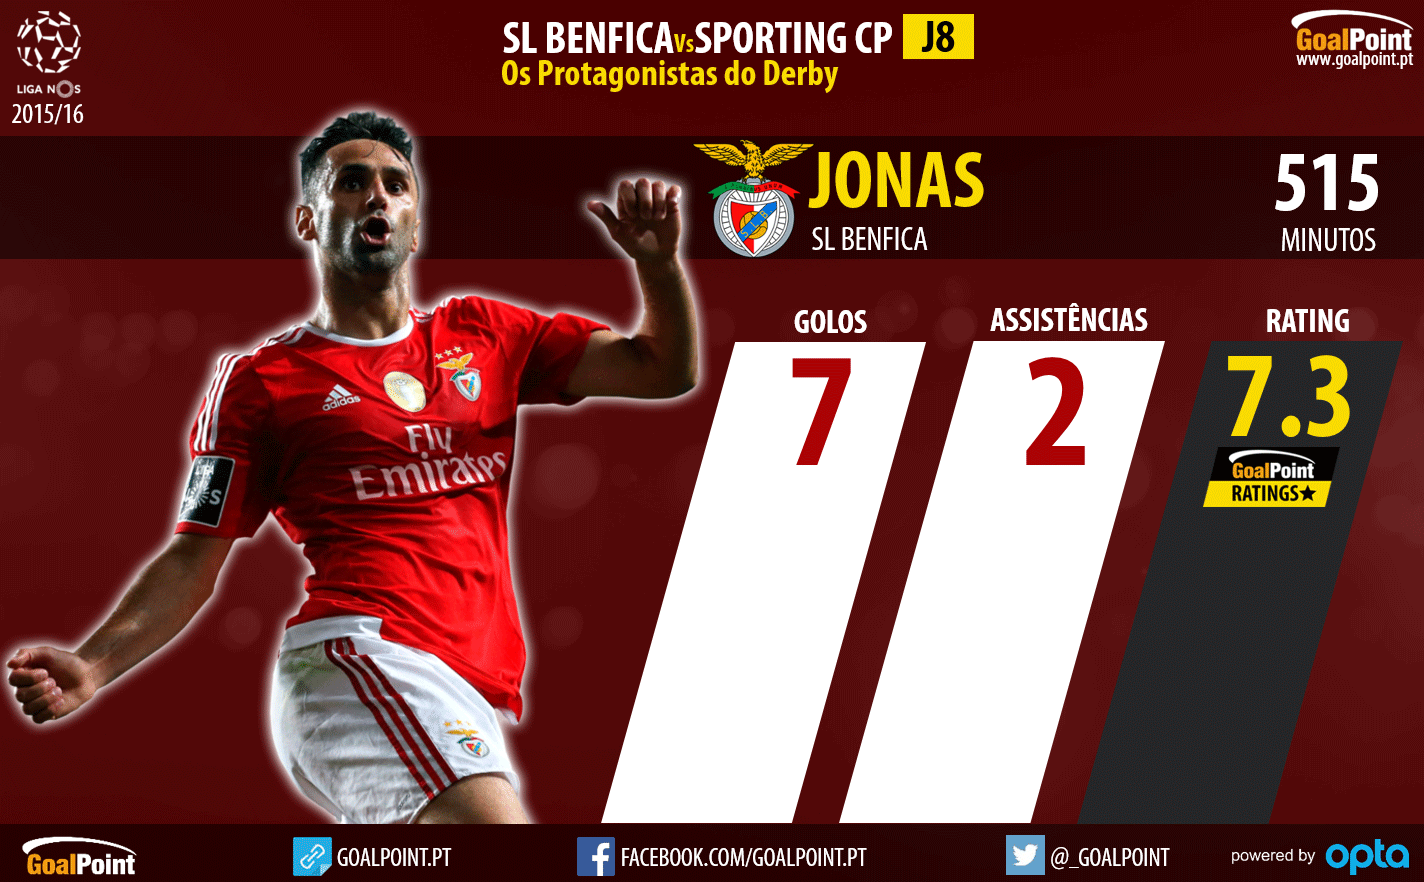 Benfica - Sporting Liga NOS 2015/16 - As figuras que podem fazer a diferença - Jona